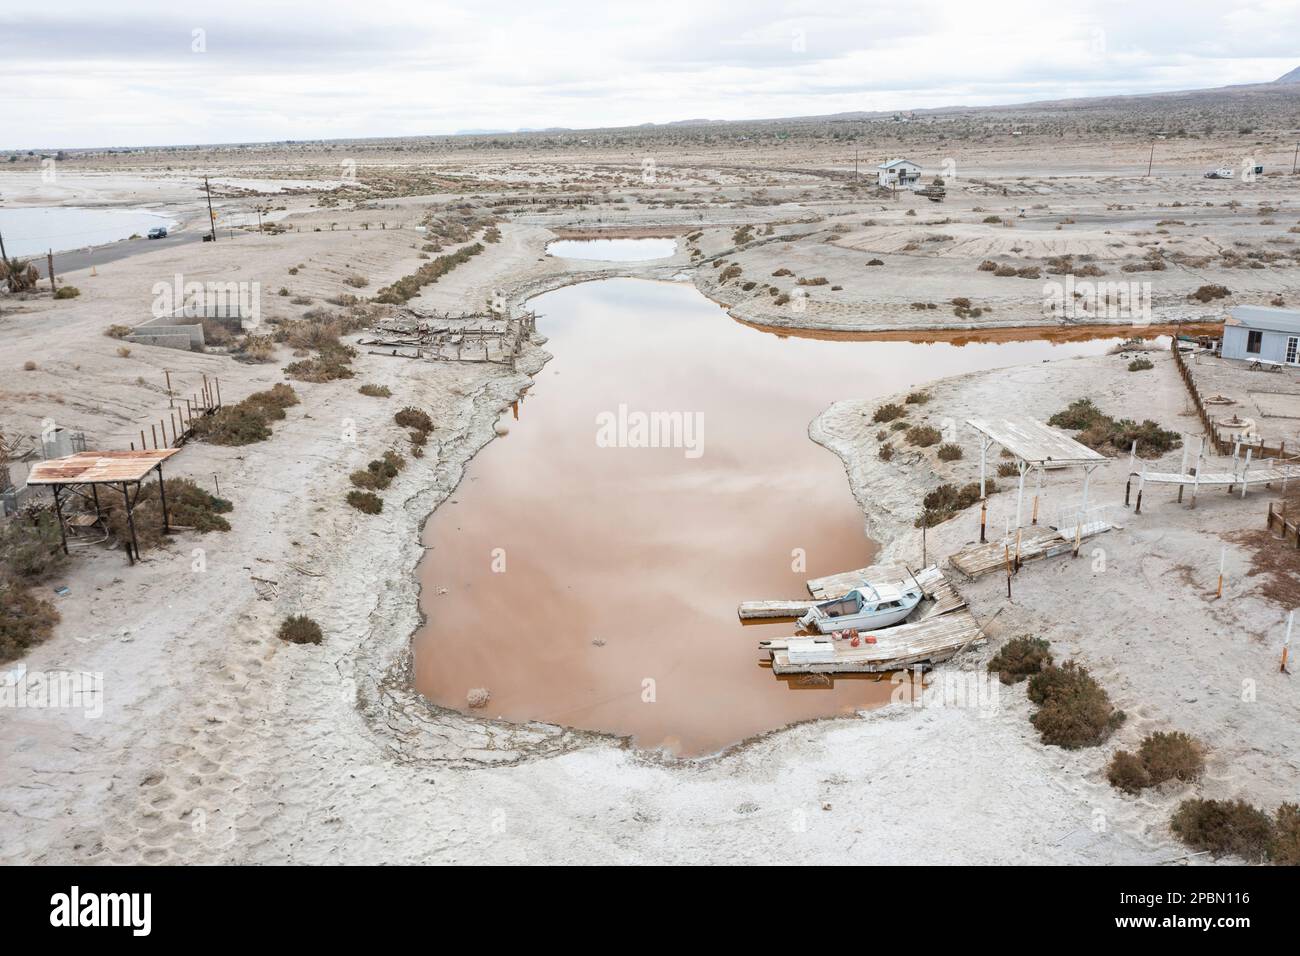 La mer de Salton est l'un des problèmes environnementaux les plus épineux de l'Occident américain. Le lac se rétrécit en raison de la sécheresse persistante, des transferts d'eau vers les villes voisines et de la diminution des entrées de ruissellement agricole alimentées par le fleuve Colorado. À Desert Shores, une communauté située sur le bord ouest de la mer de Salton, le rivage en recul a coupé le port de plaisance de la ville du reste du lac. Les polluants et les microbes salants ont transformé l'eau stagnante et nauséabonde en une teinte rougeâtre éclatante. Banque D'Images